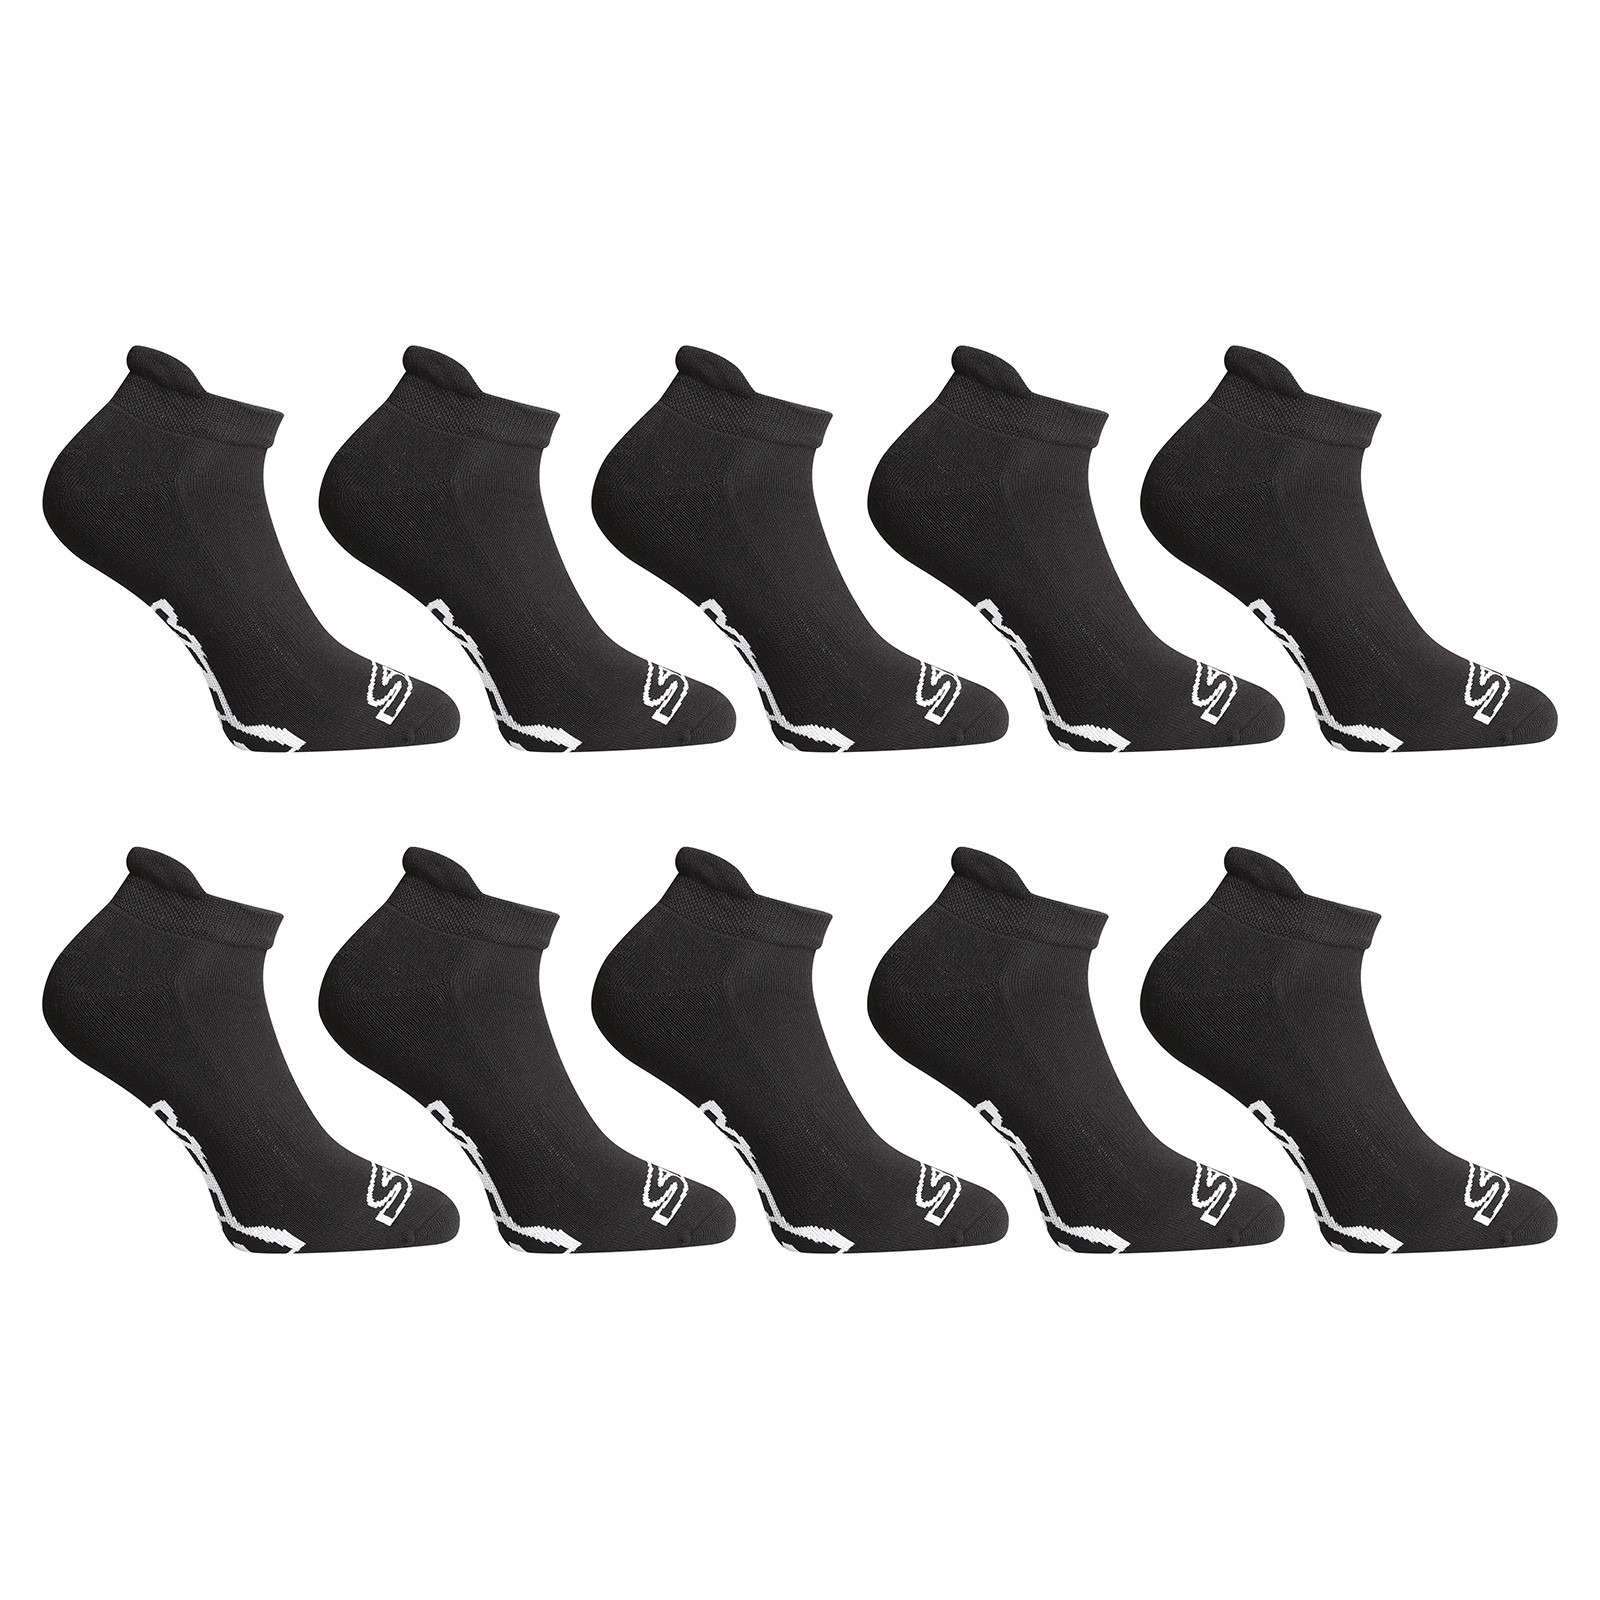 E-shop 10PACK ponožky Styx nízké černé